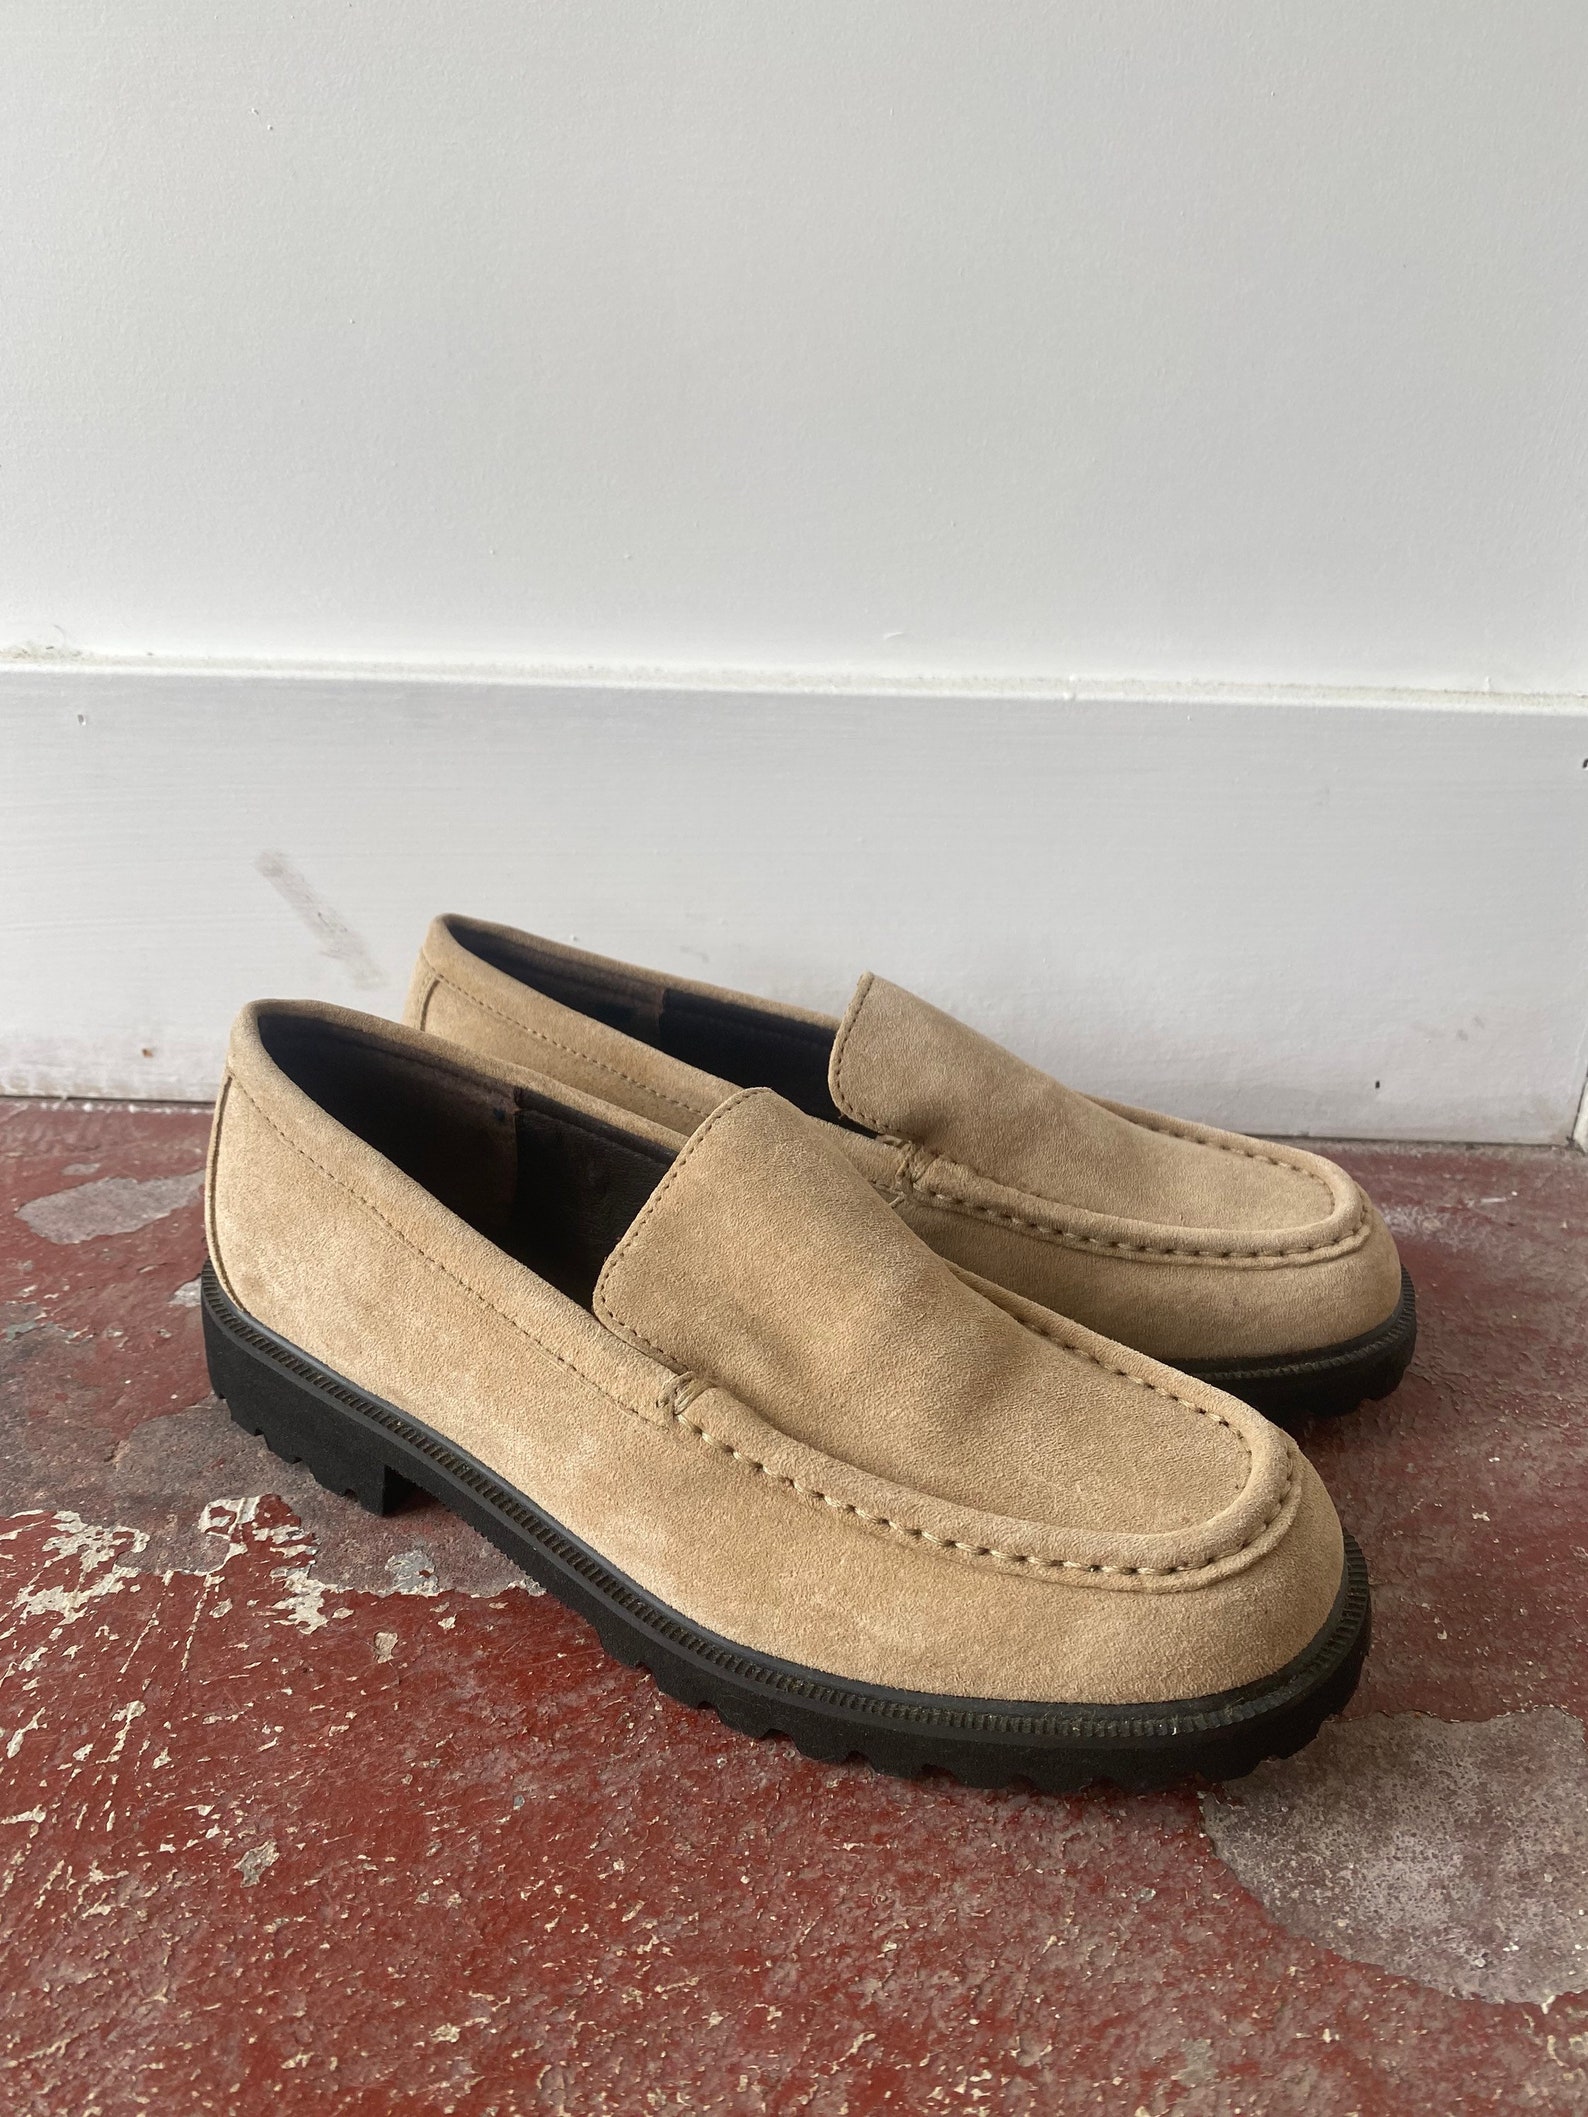 Vintage L.L. Bean Loafers | Etsy